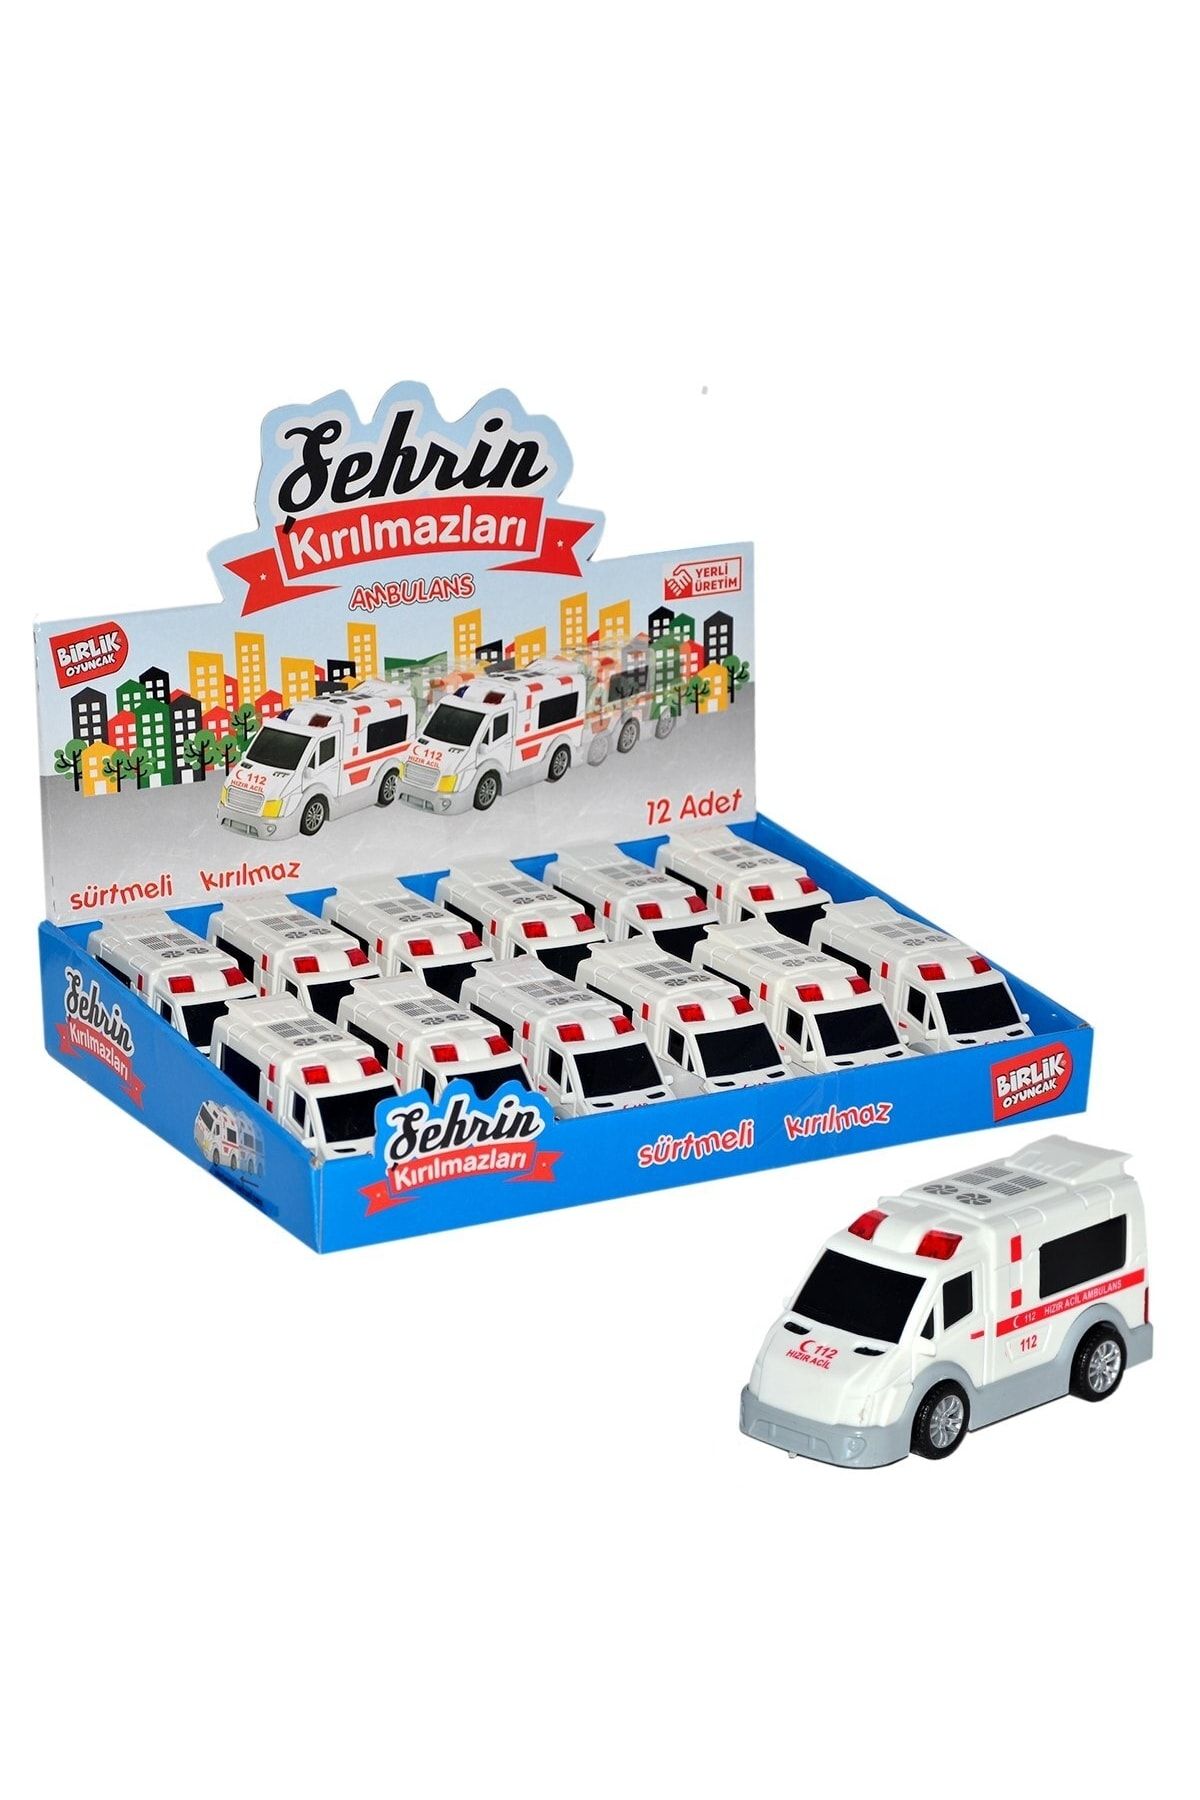 BİRLİK TOYS Urt004-001 Ambulans Şehrin Kırılmazları